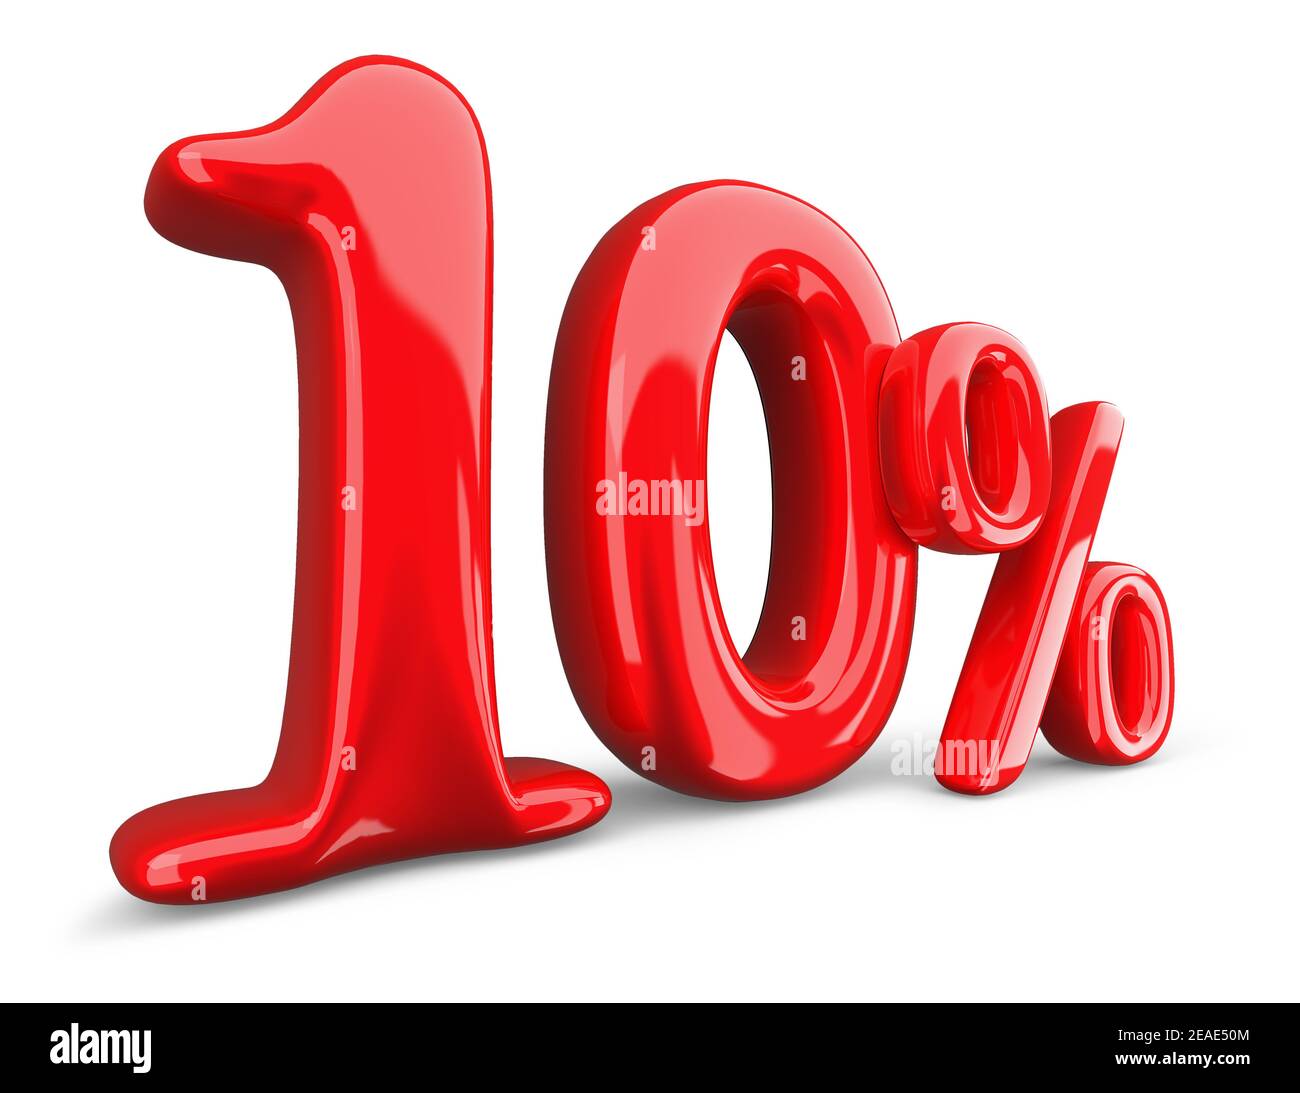 simbolo rosso del 10%, 10% su sfondo bianco, rendering 3d. Foto Stock